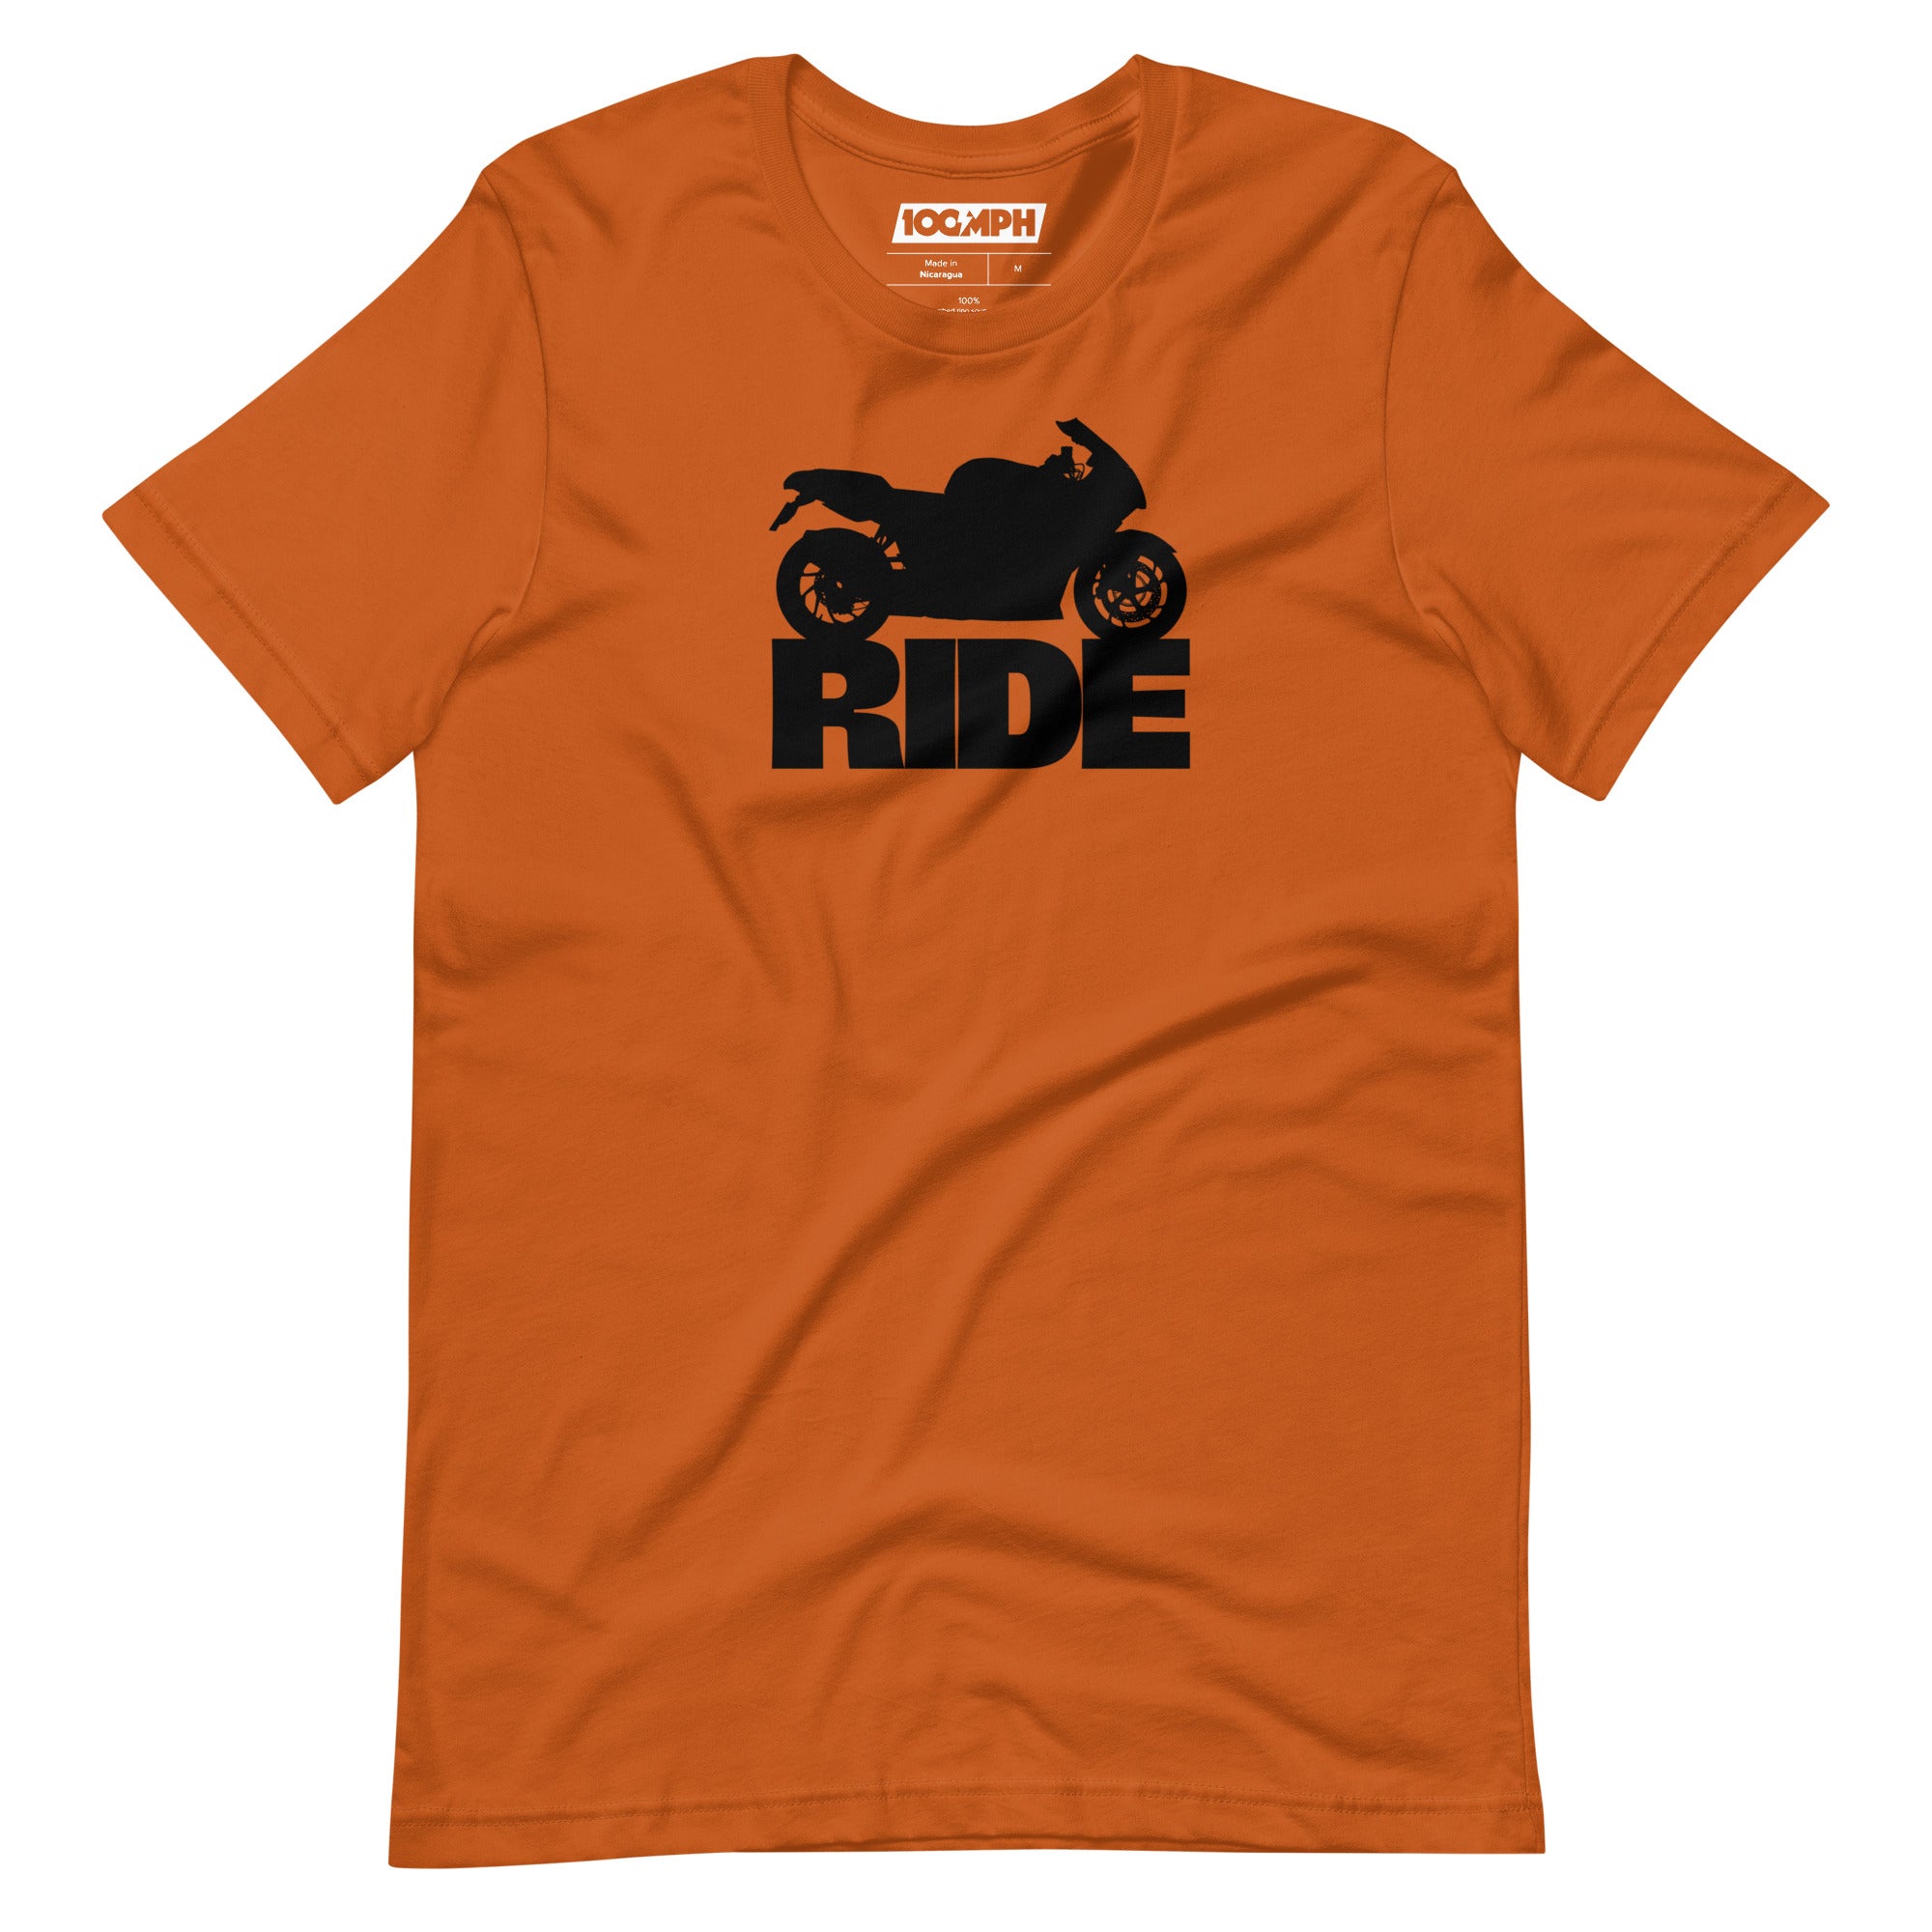 Ride - Road Bike